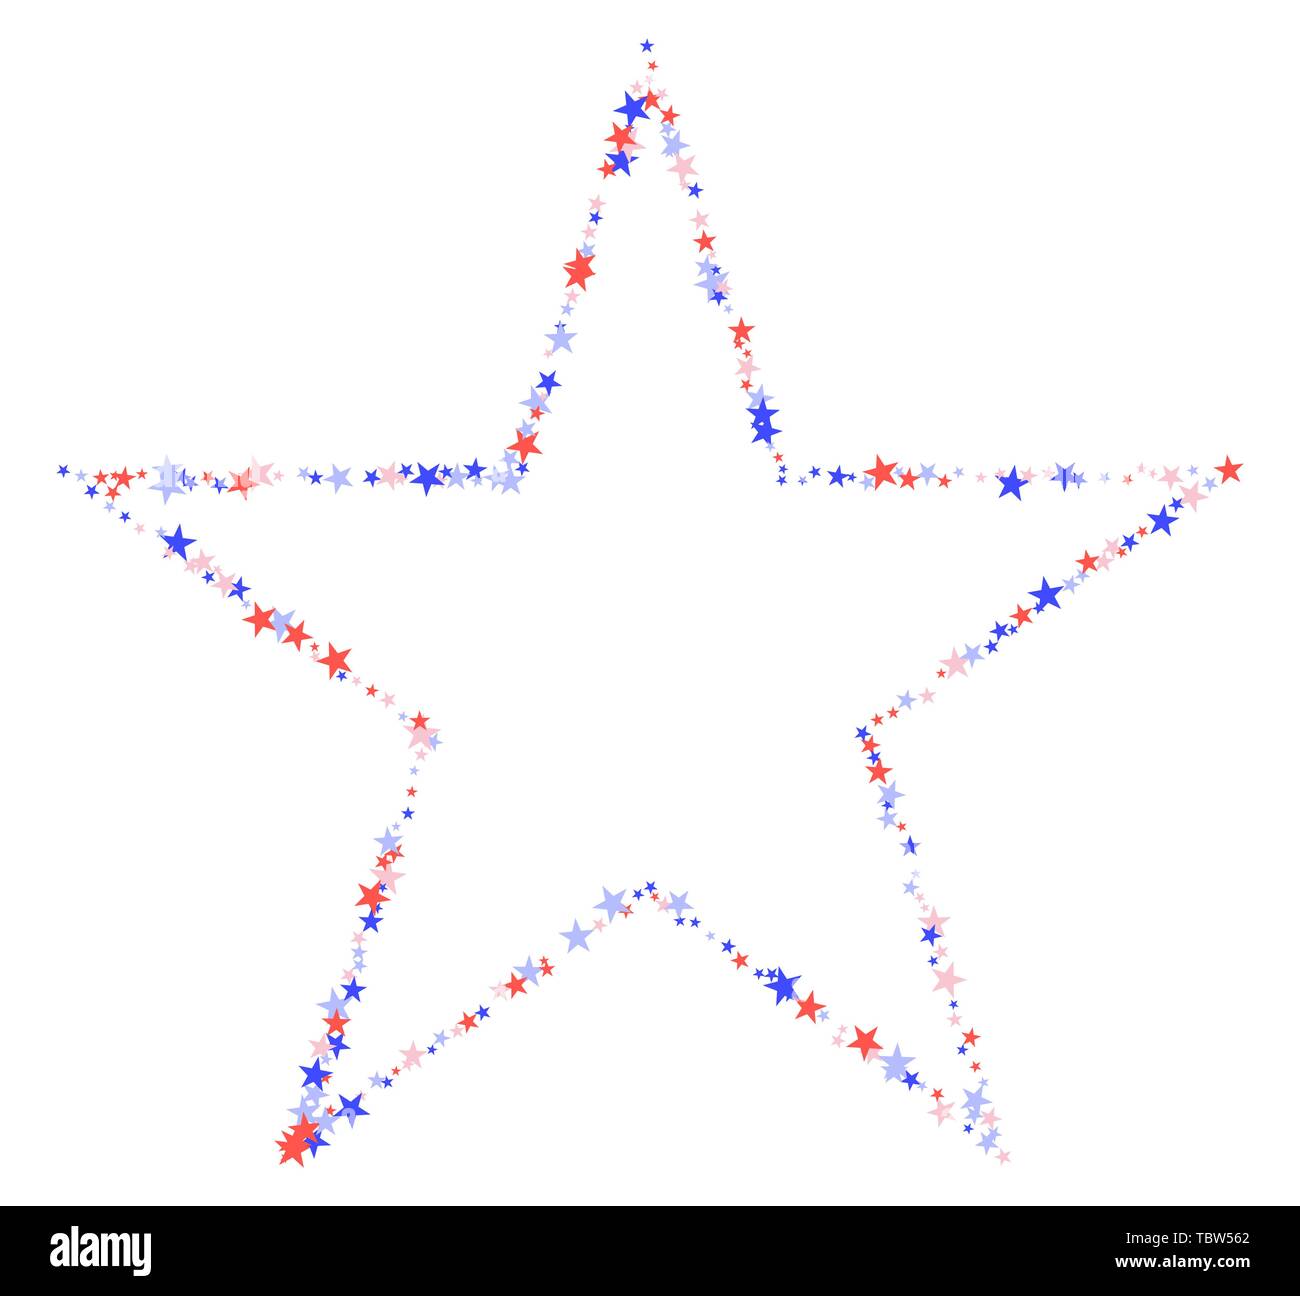 Am 4. Juli. Stern aus kleinen Sternen. Rote, blaue und weiße Konfetti, bunten Kulisse im abstrakten Stil. Vector Illustration auf weißen Bac Stock Vektor